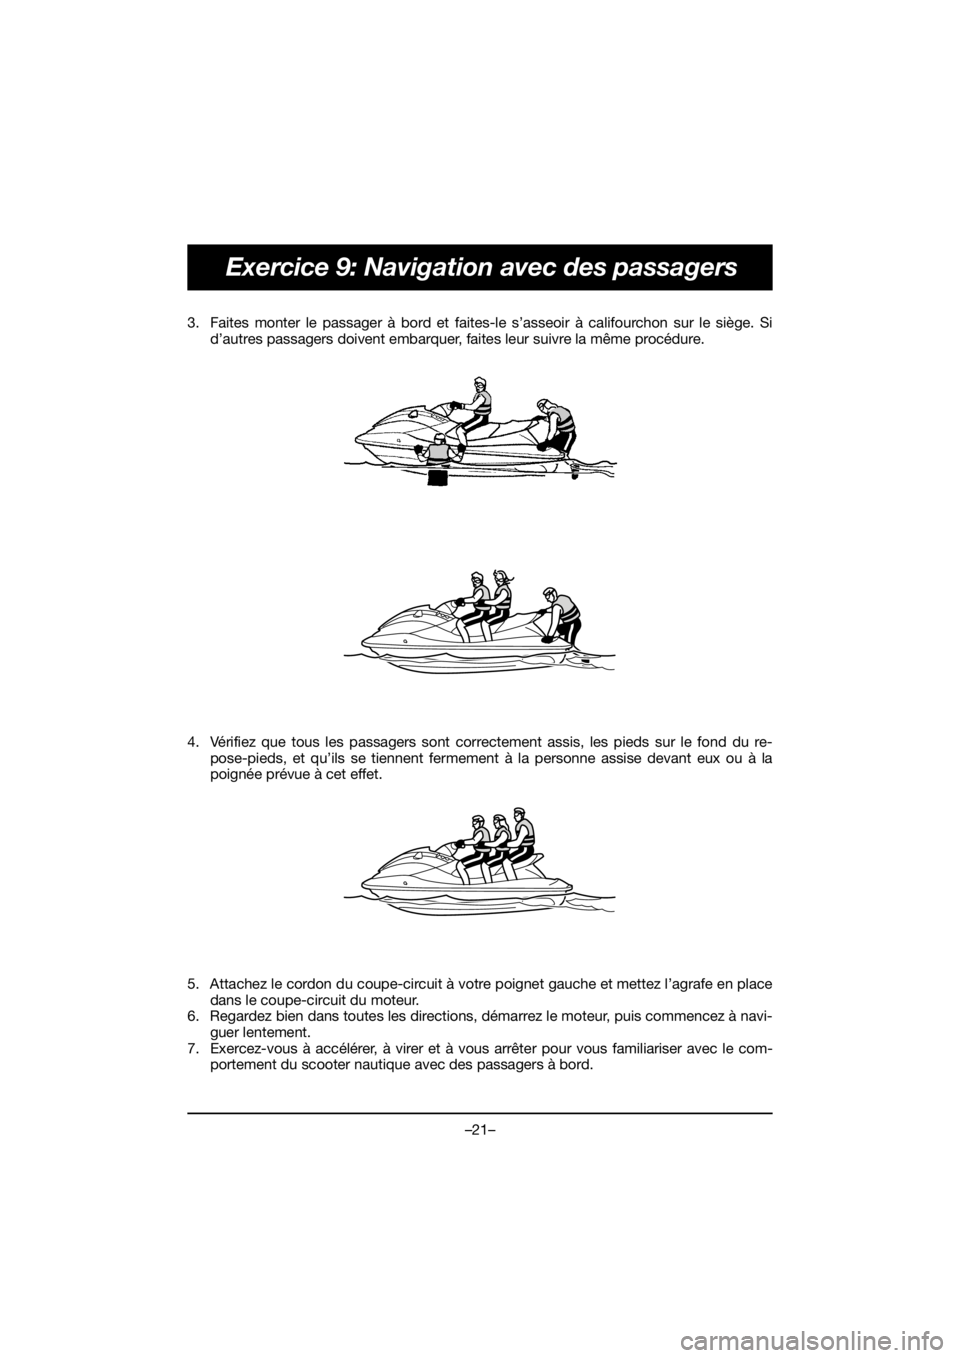 YAMAHA FJR1300 2019  ΟΔΗΓΌΣ ΧΡΉΣΗΣ (in Greek) –21–
Exercice 9: Navigation avec des passagers
3. Faites monter le passager à bord et faites-le s’asseoir à califourchon sur le siège. Si
d’autres passagers doivent embarquer, faites leur s